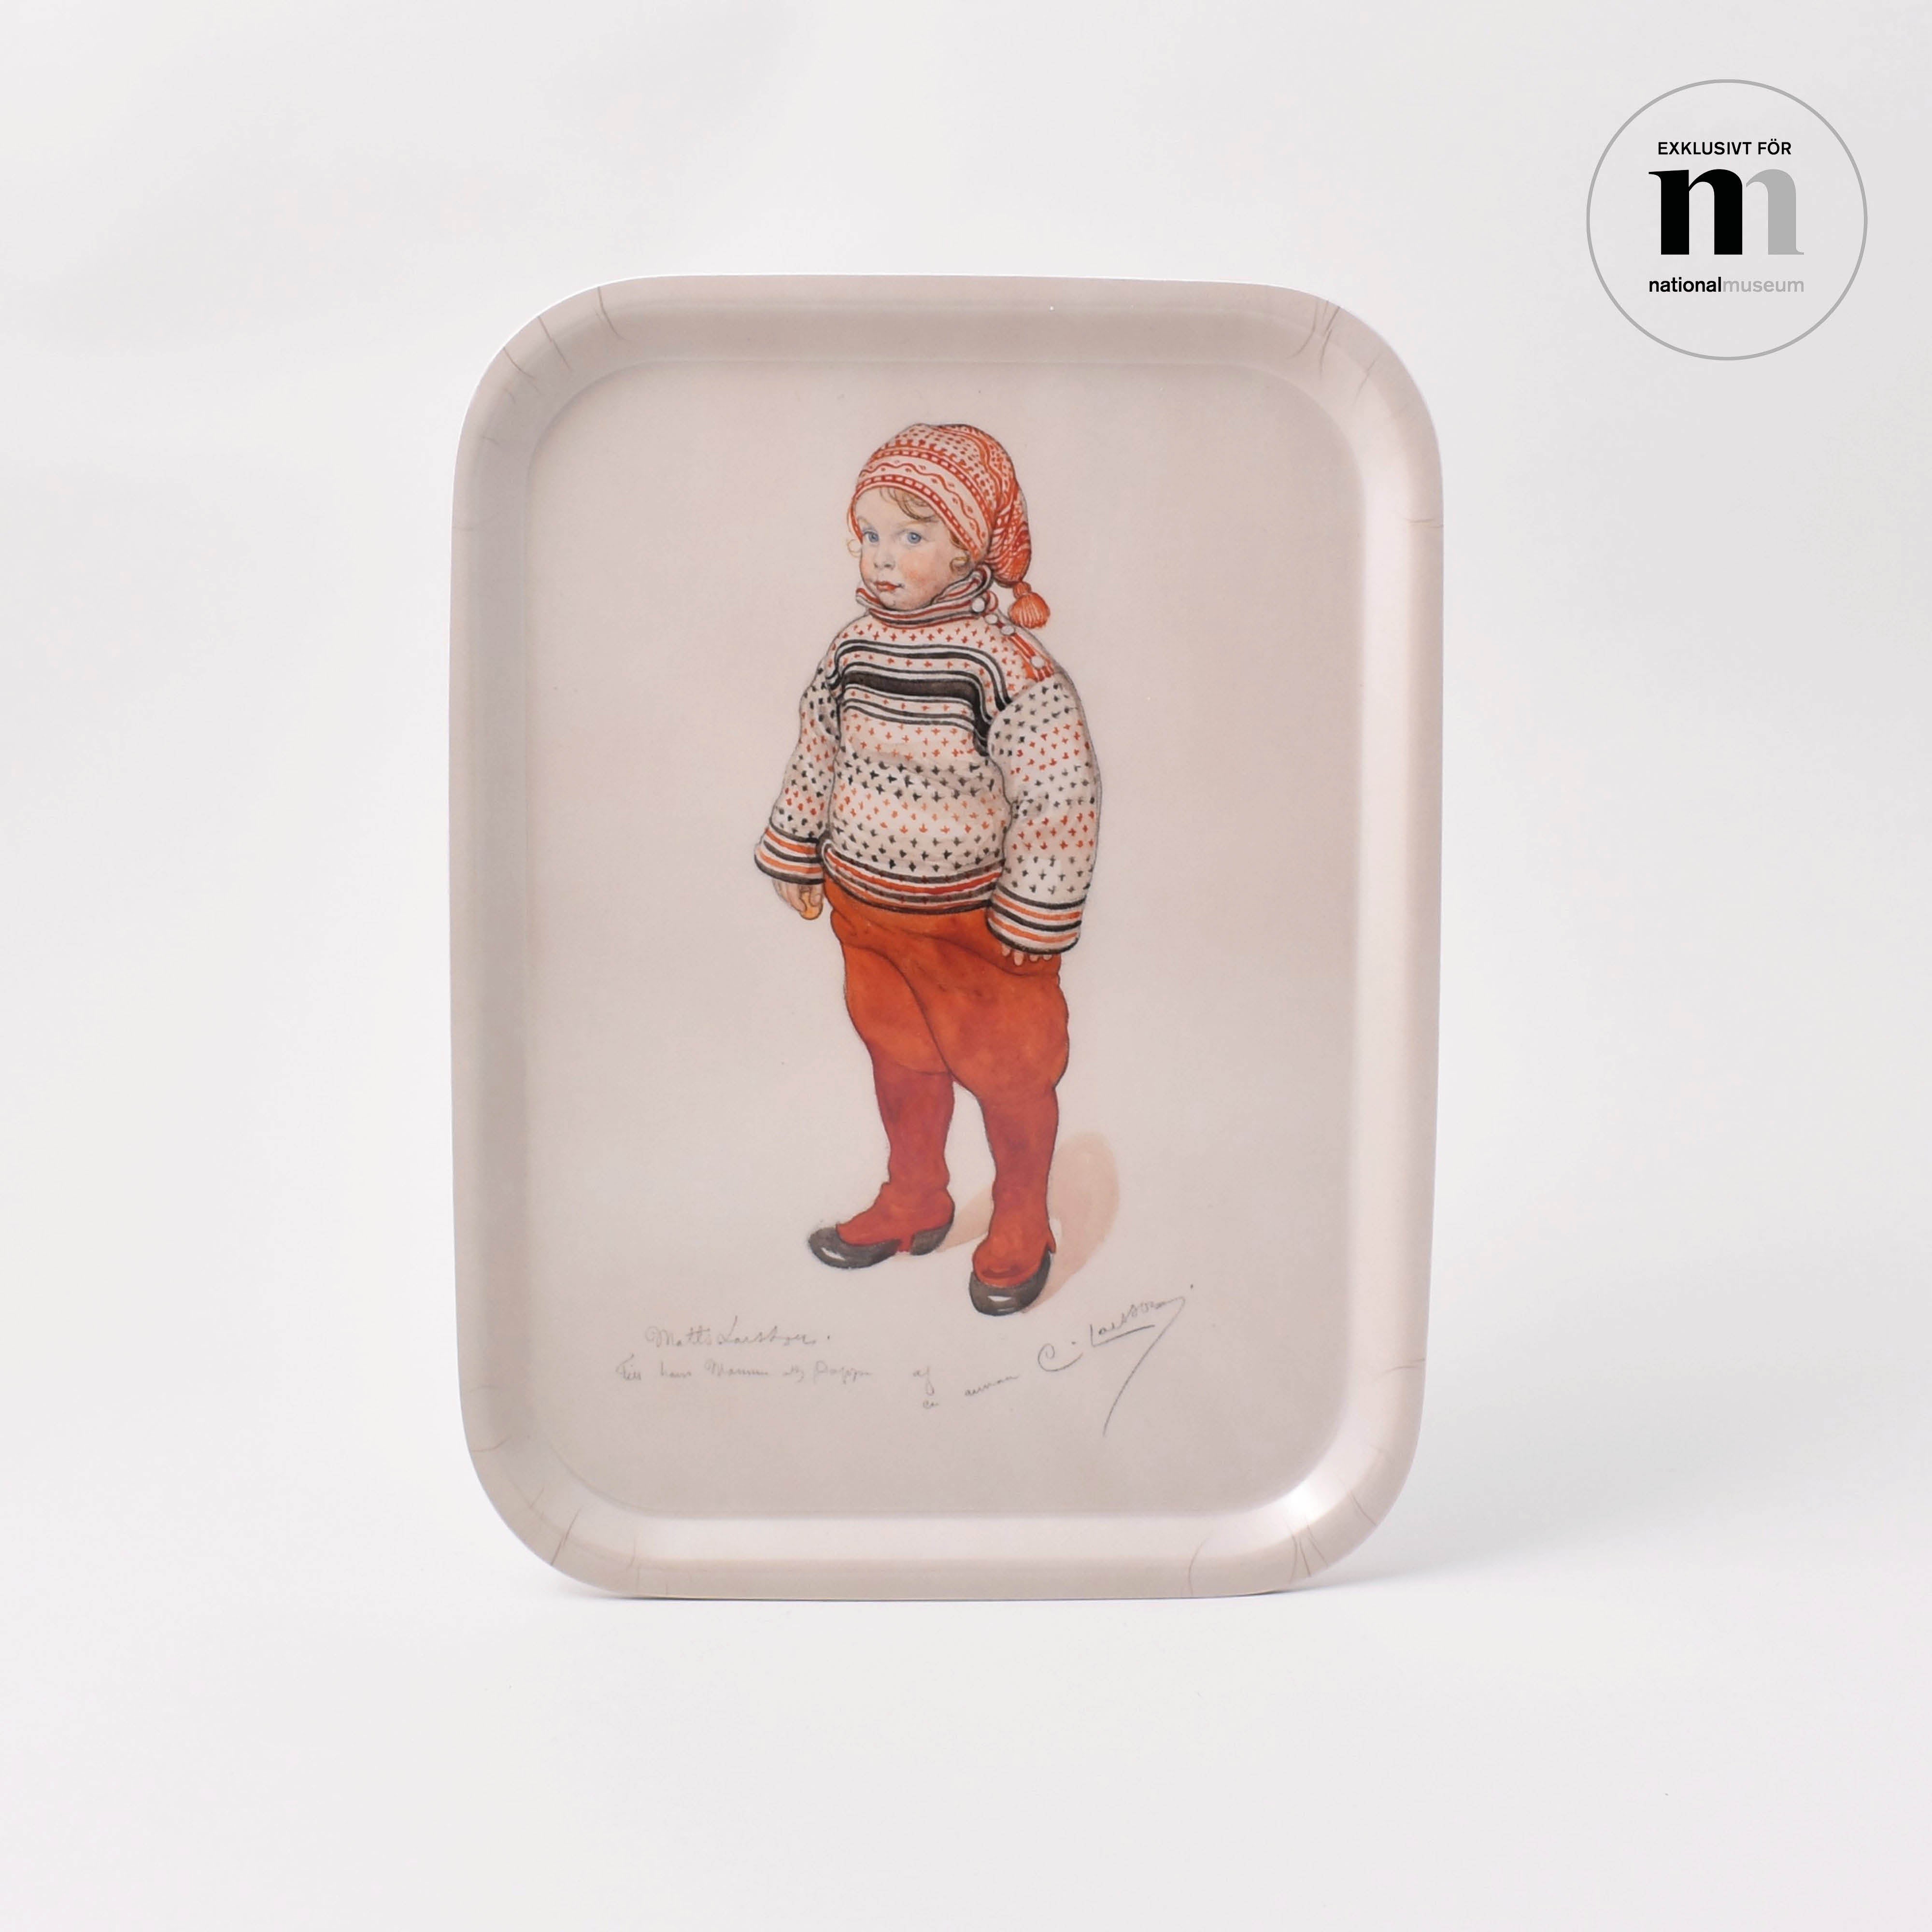 bricka med akvarell av Carl Larsson från Nationalmuseum